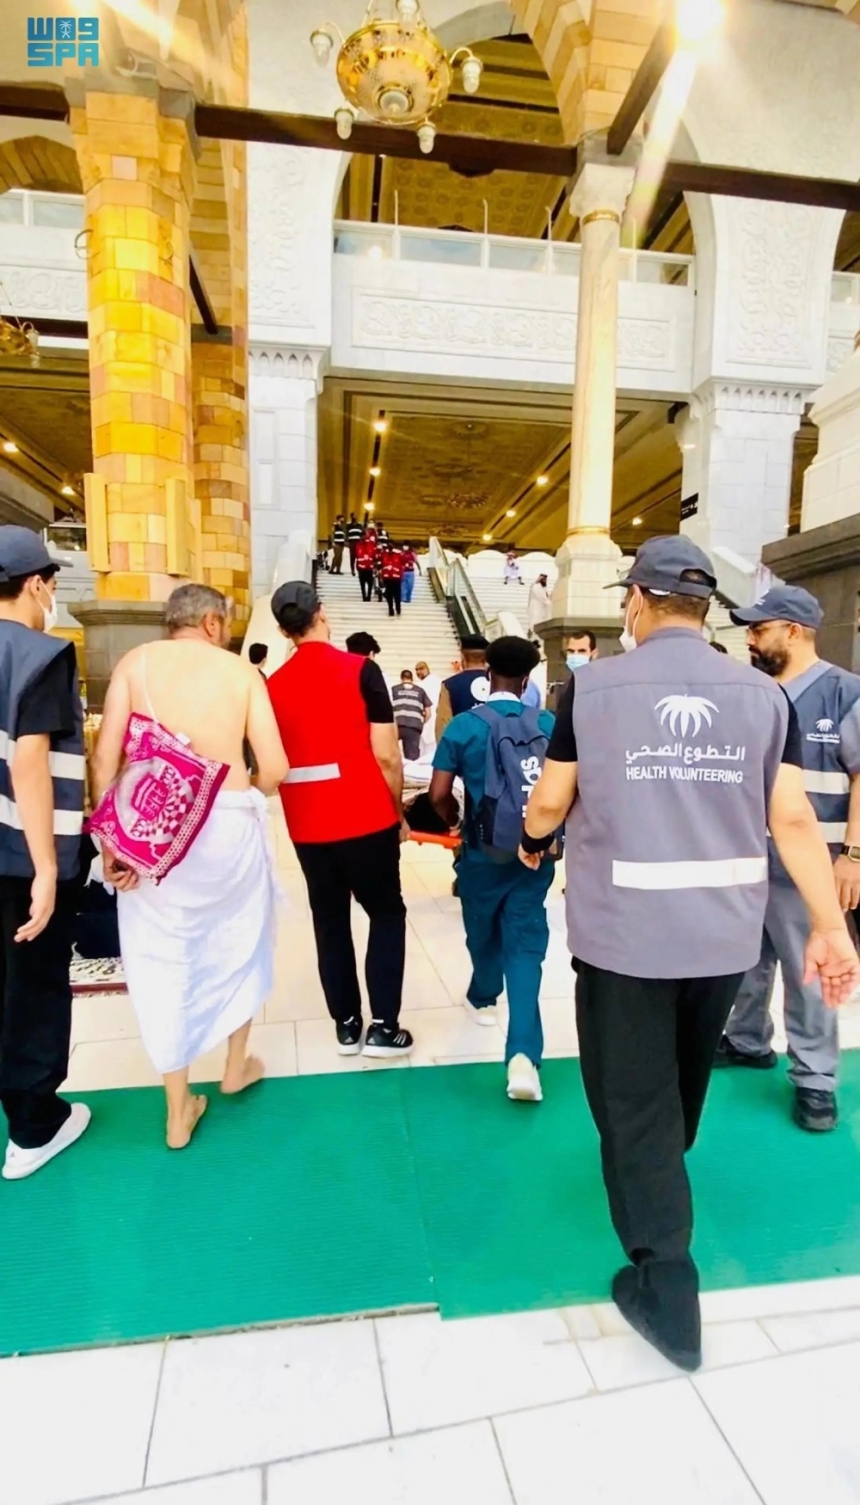 جهود متطوعي الصحة في المسجد الحرام - واس 